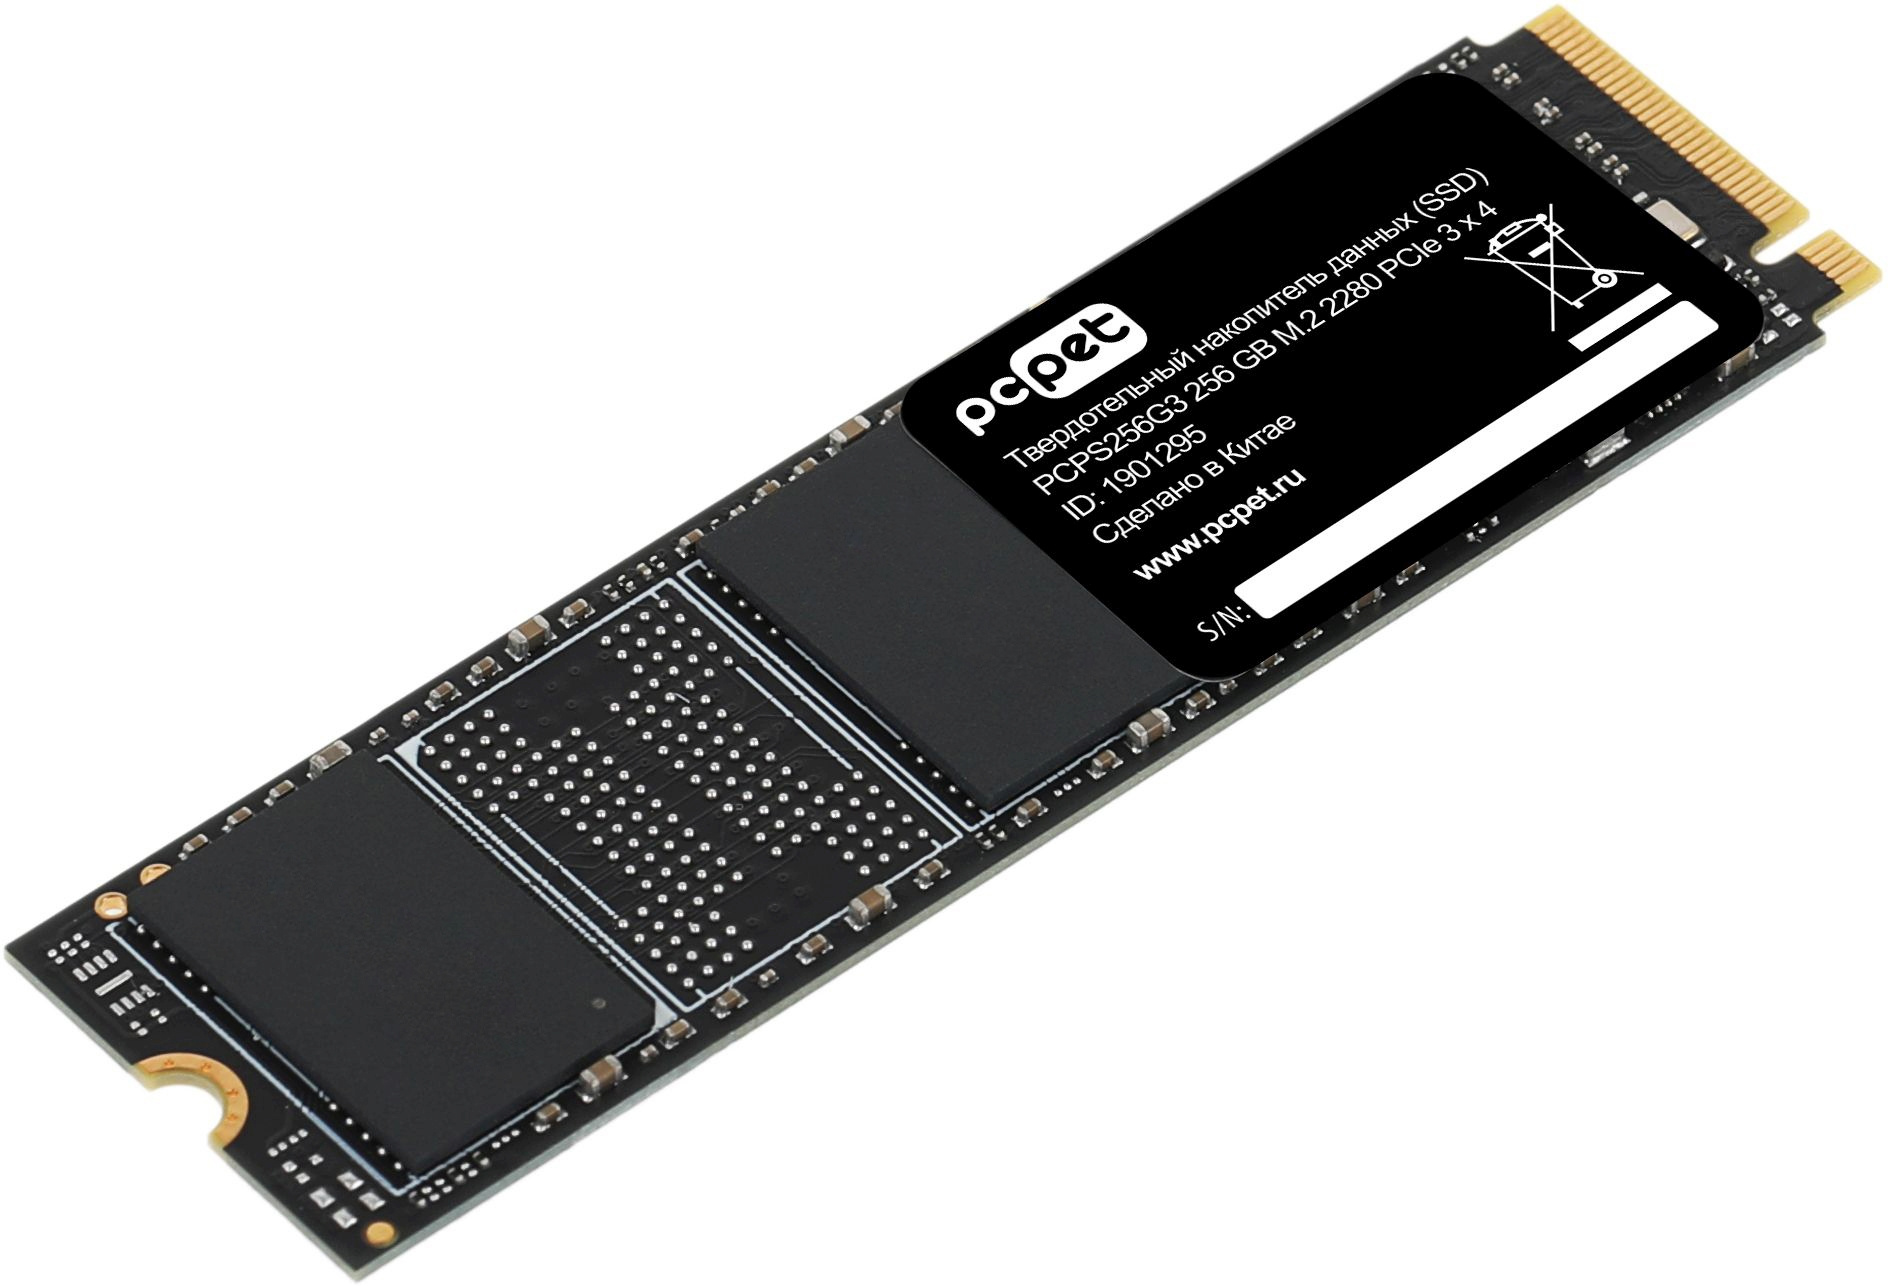 SSD  PC PET PCPS256G3 256, M.2 2280, PCIe 3.0 x4,  NVMe,  M.2,  oem